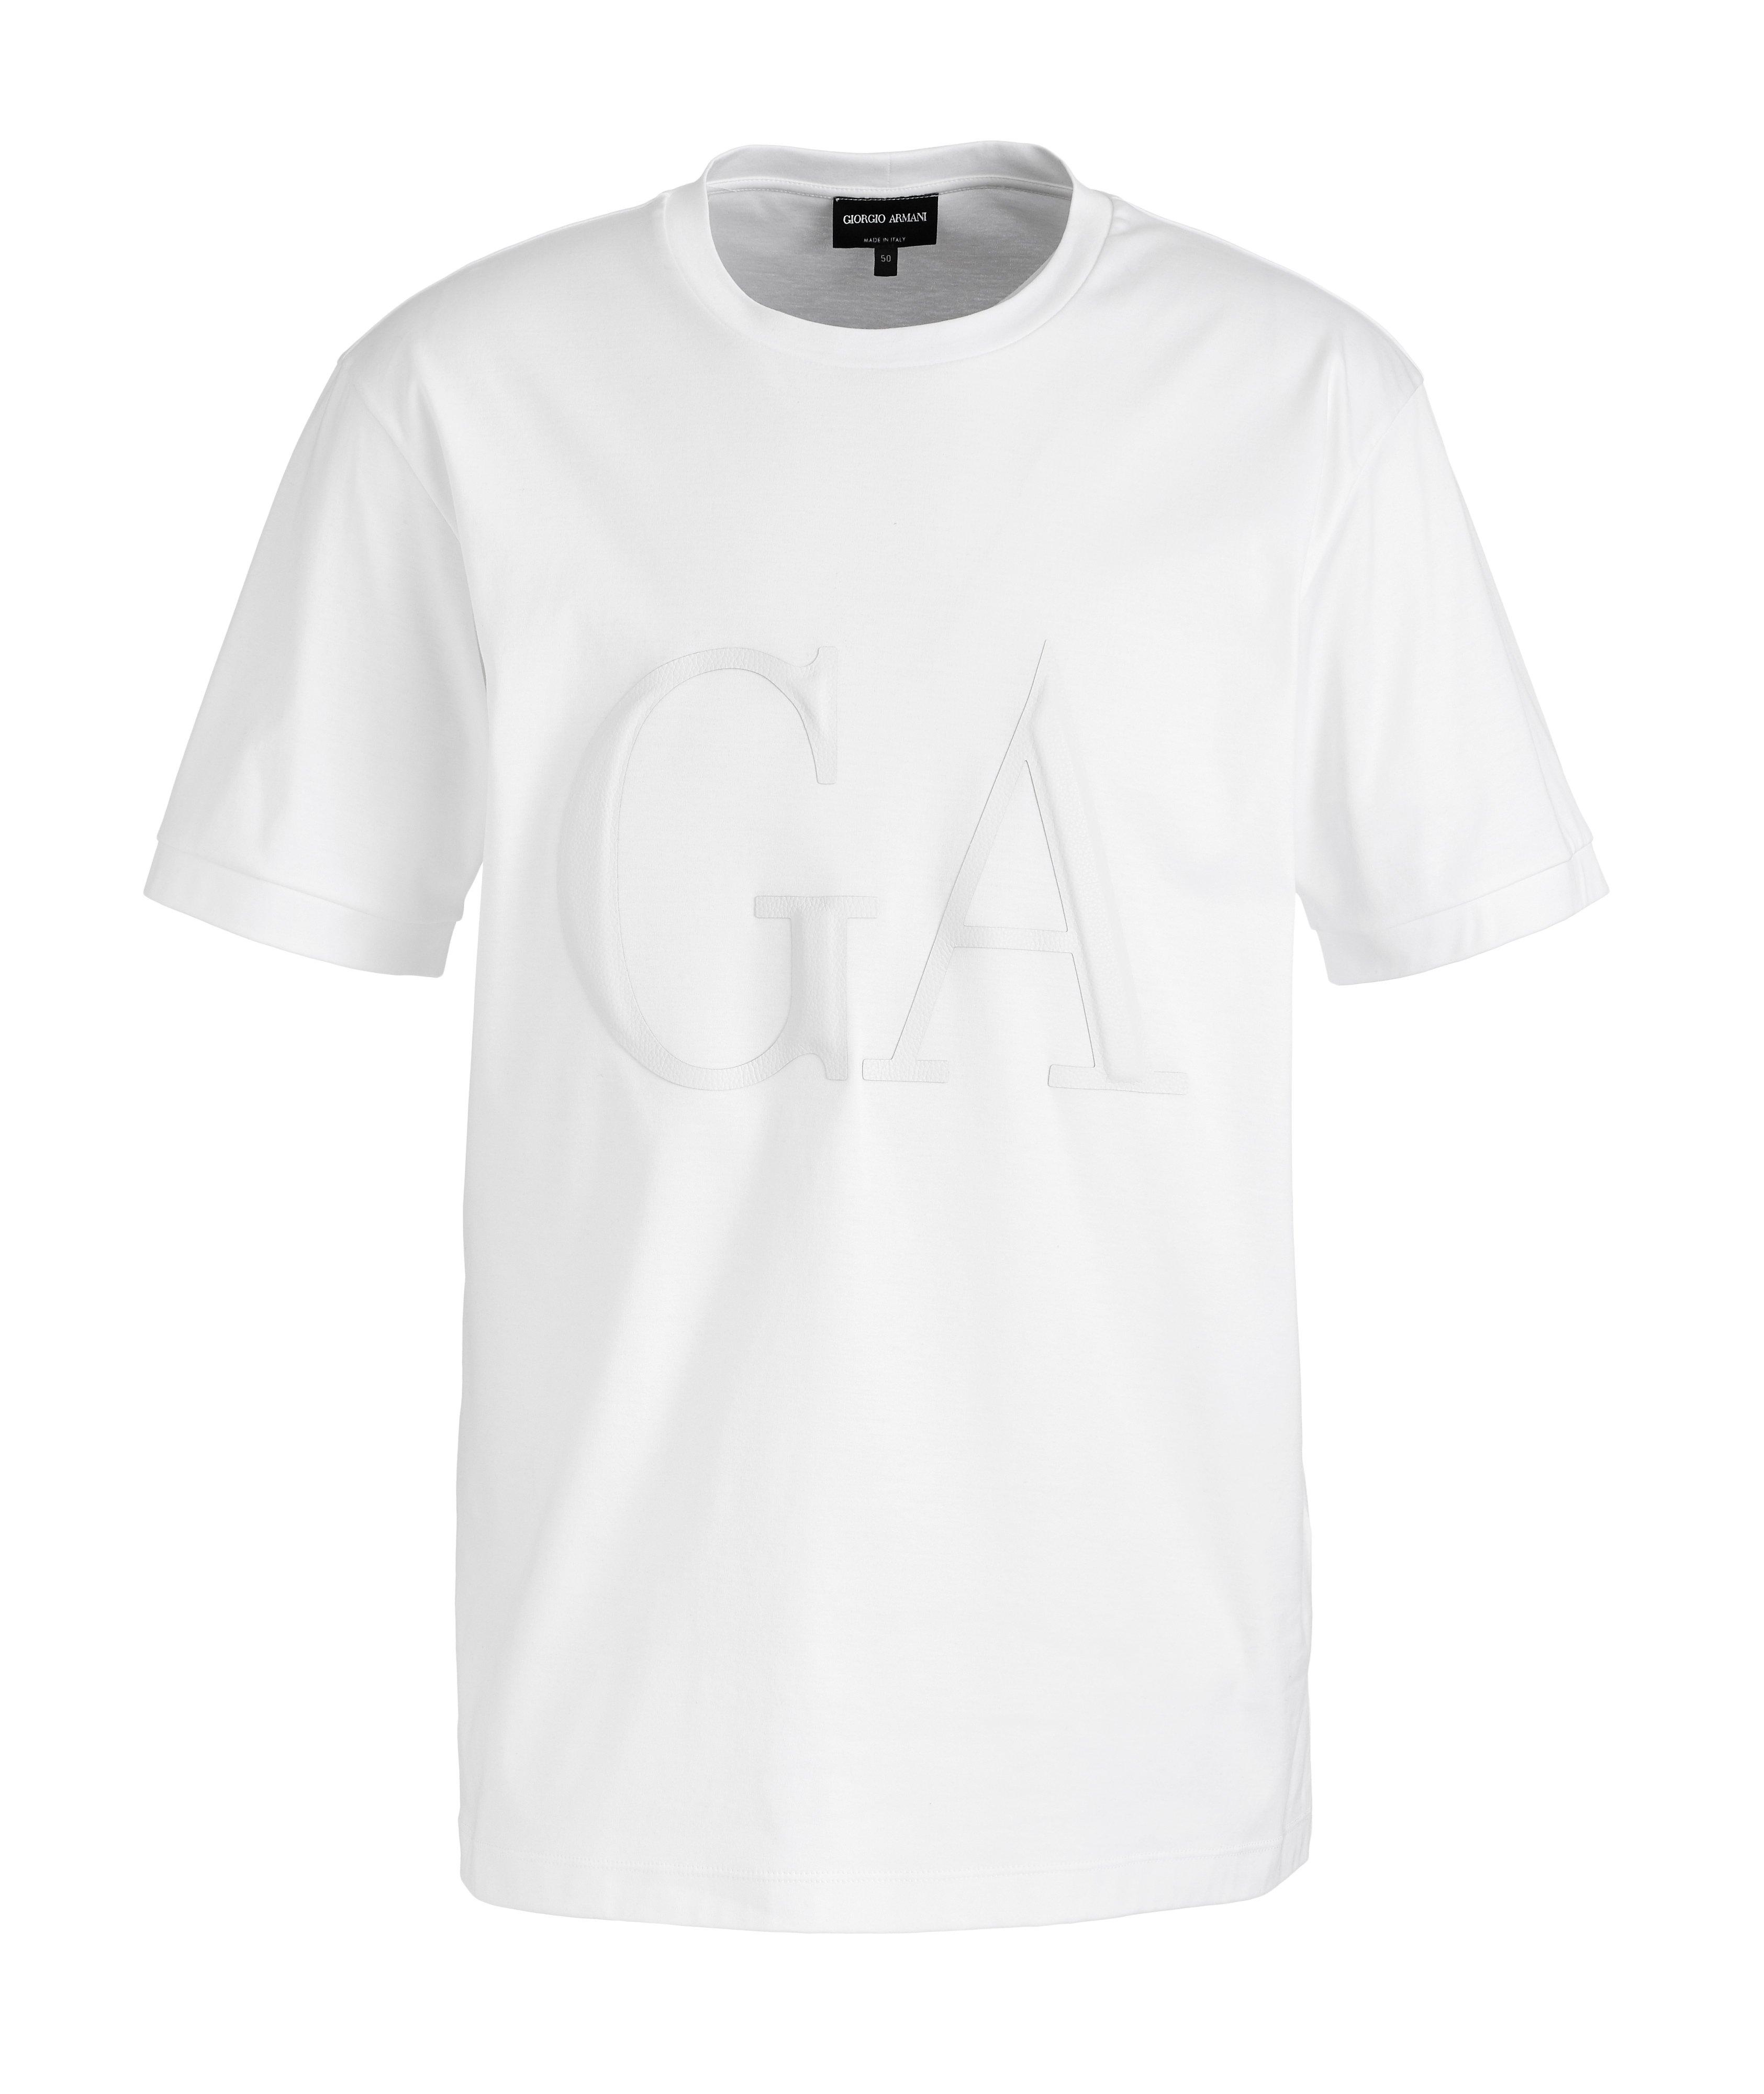 T-shirt en coton avec logo en cuir image 0